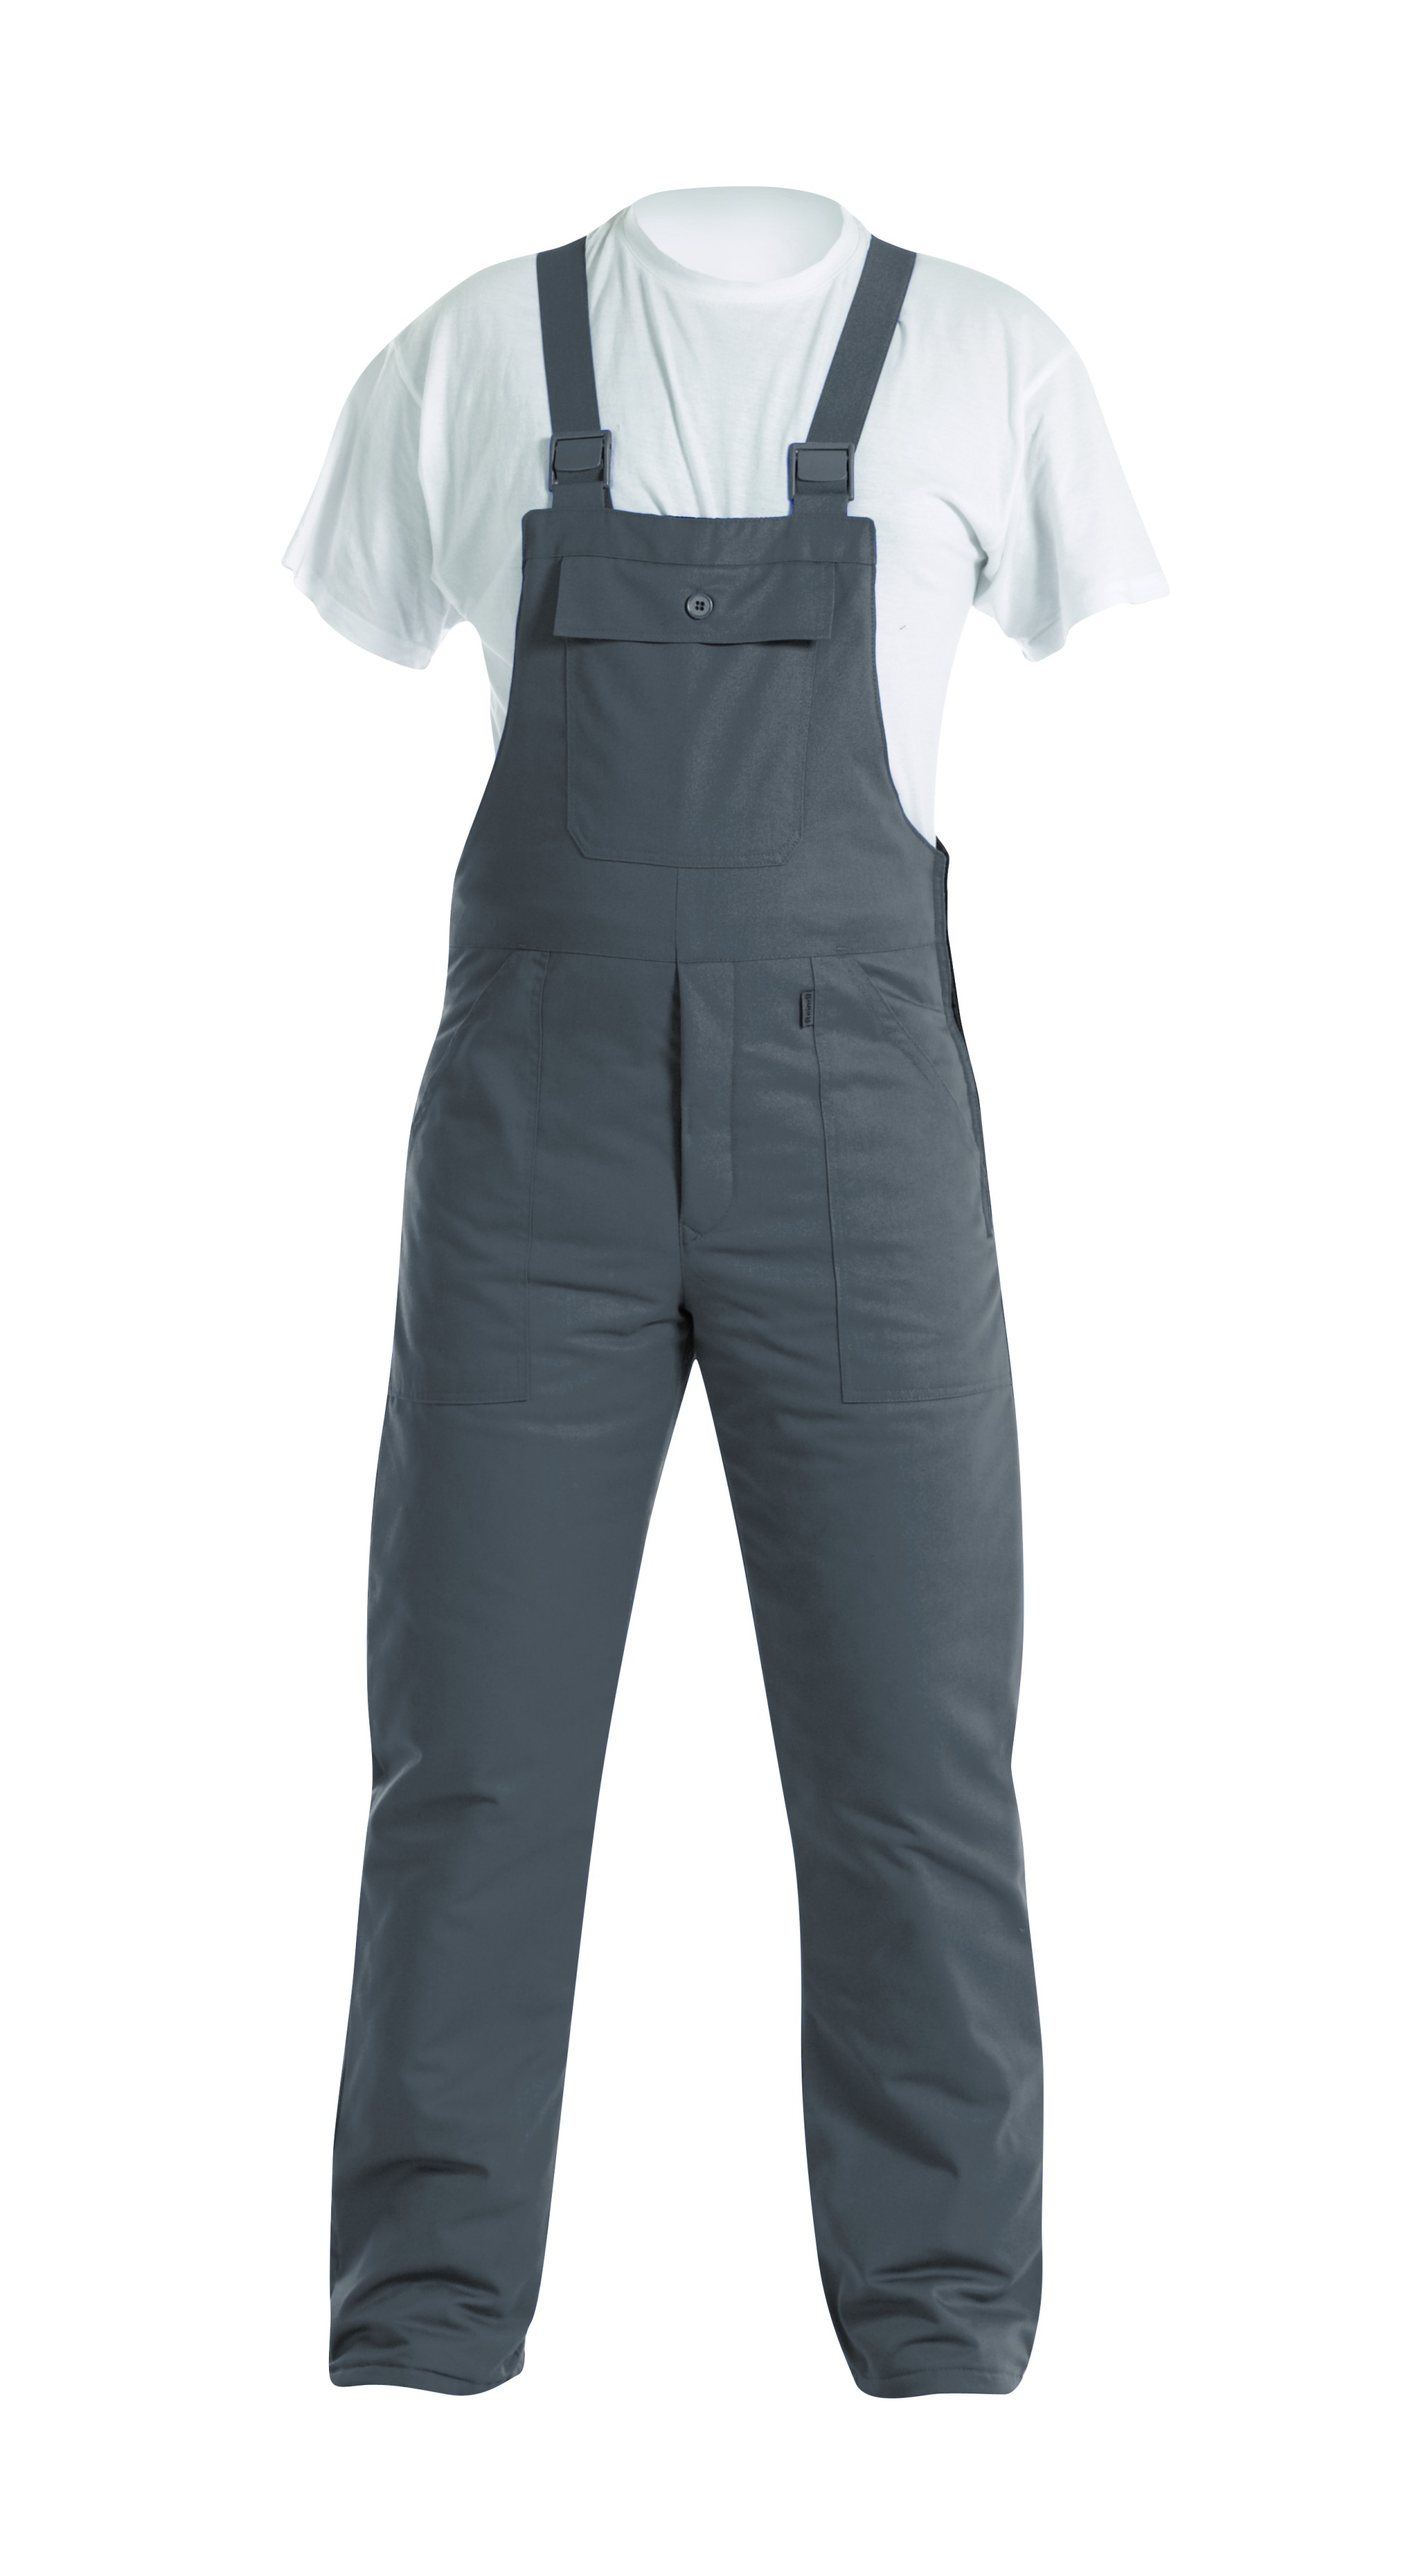 REINDL | Winter-Latzhose | Arbeitskleidung & Arbeitsschutzartikel von Reindl